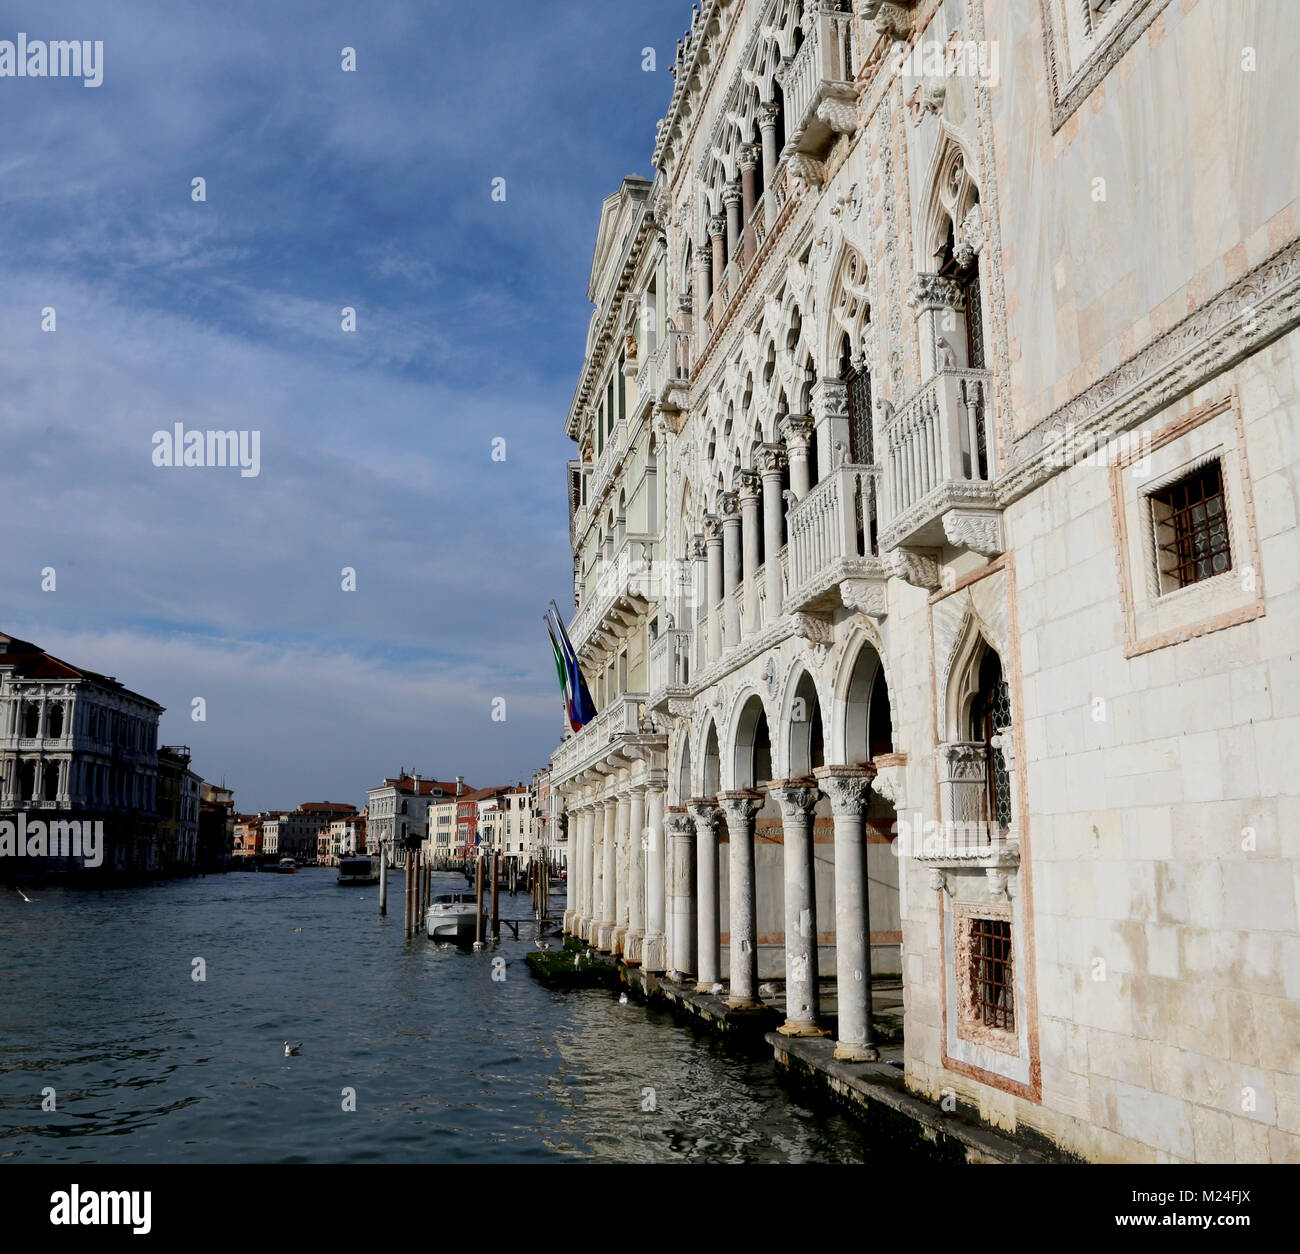 Venedig, Italien - 31.12.2015: Schloss namens Ca D'Oro bedeutet das Goldene Haus in italienischer Sprache und Wasser auf den Canal Grande Stockfoto